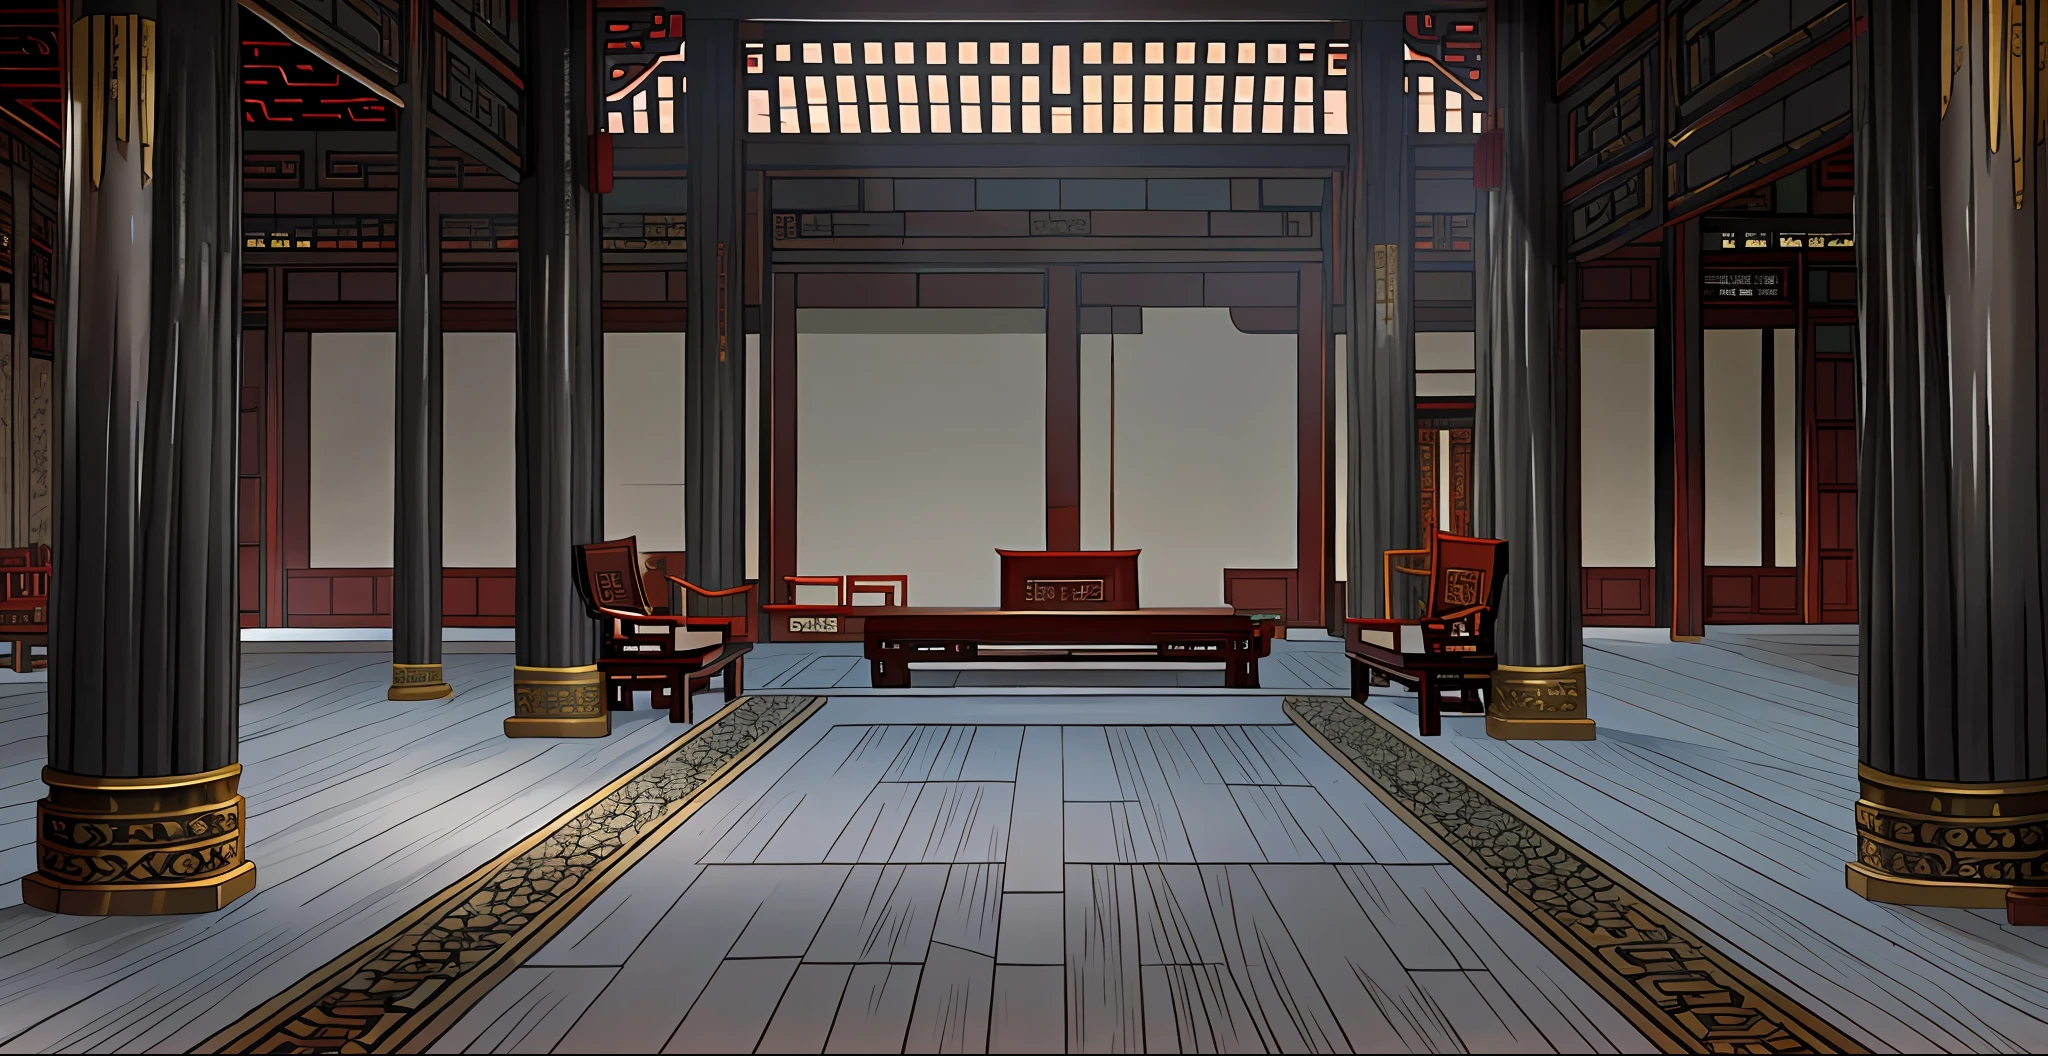 Escena interior del antiguo salón del palacio imperial chino, Sillas